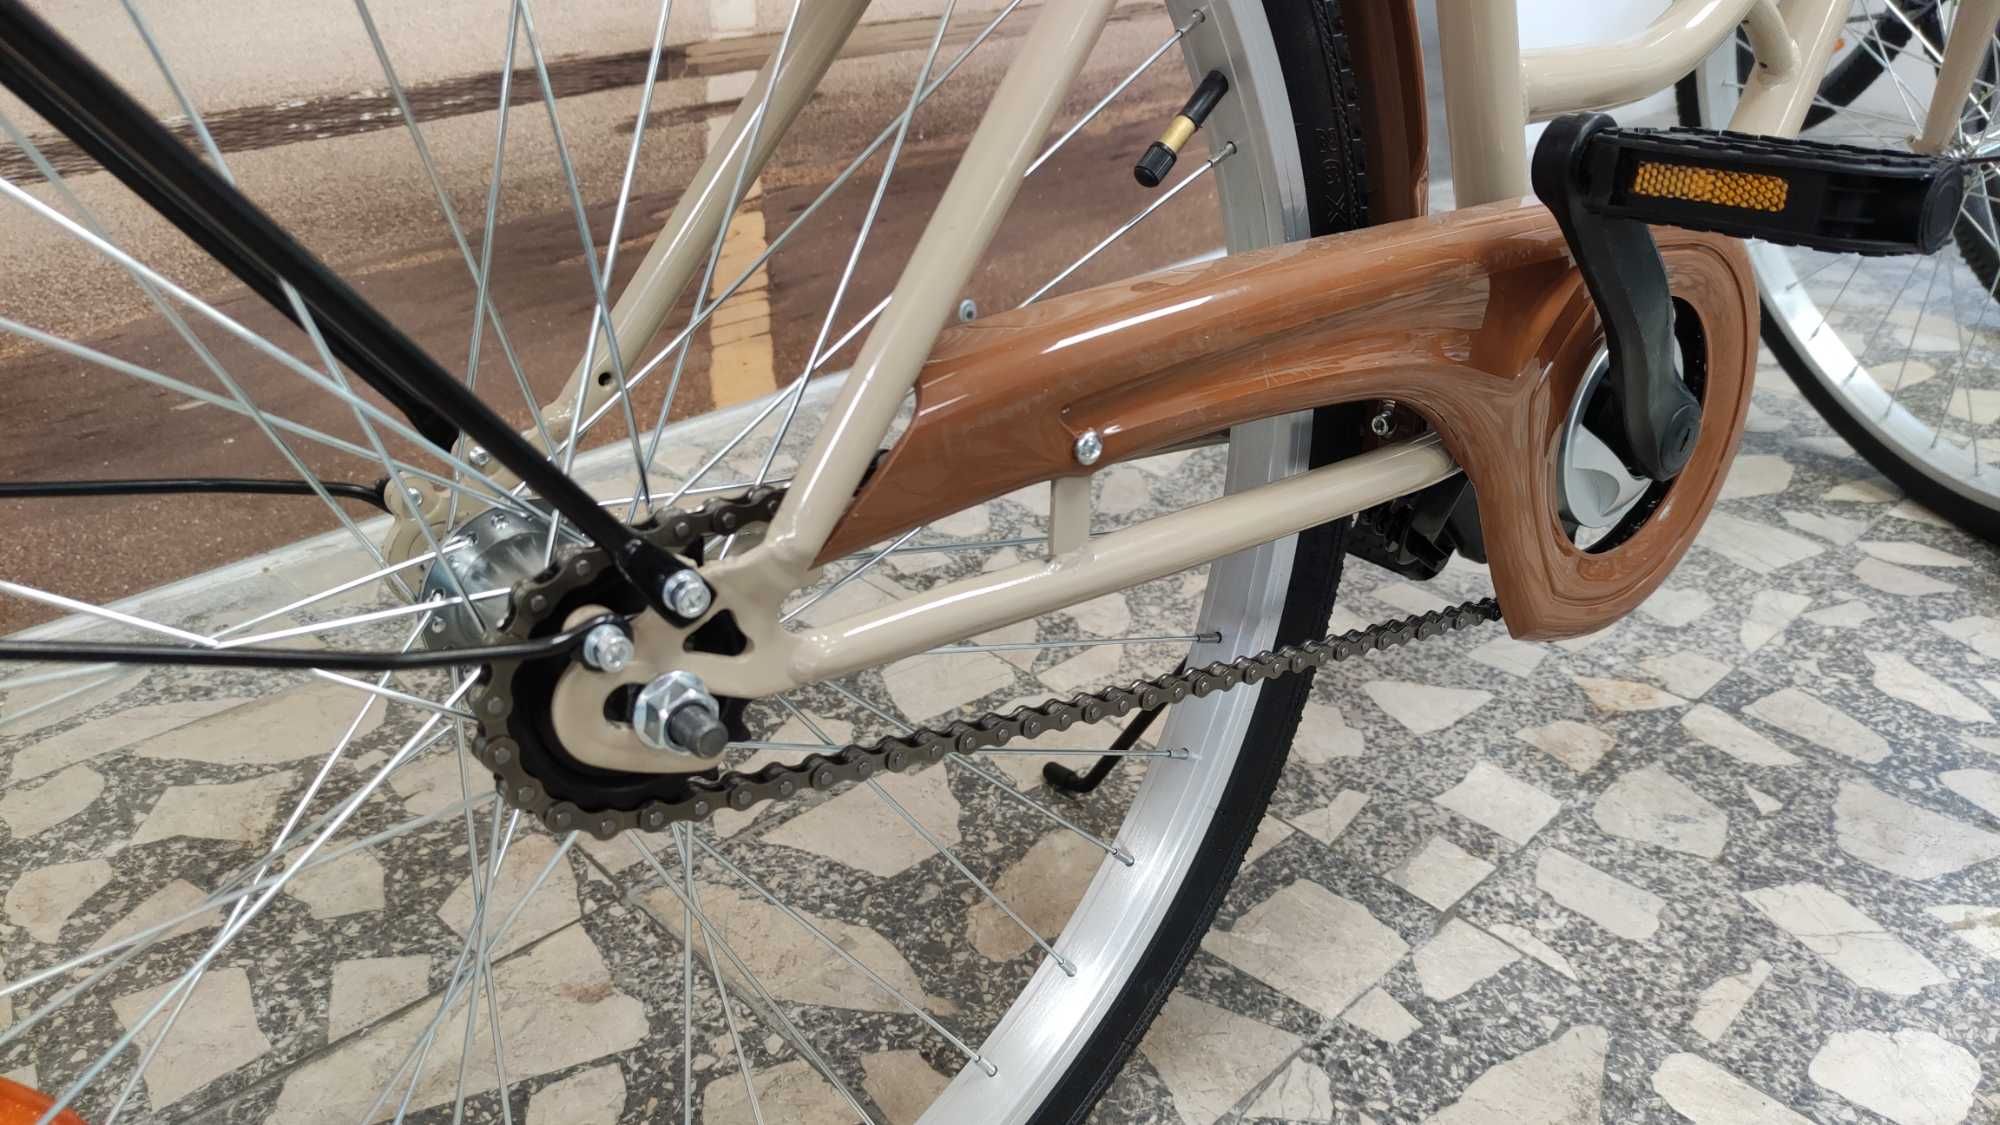 Nowy rower miejski marki Alice koła 26" rama